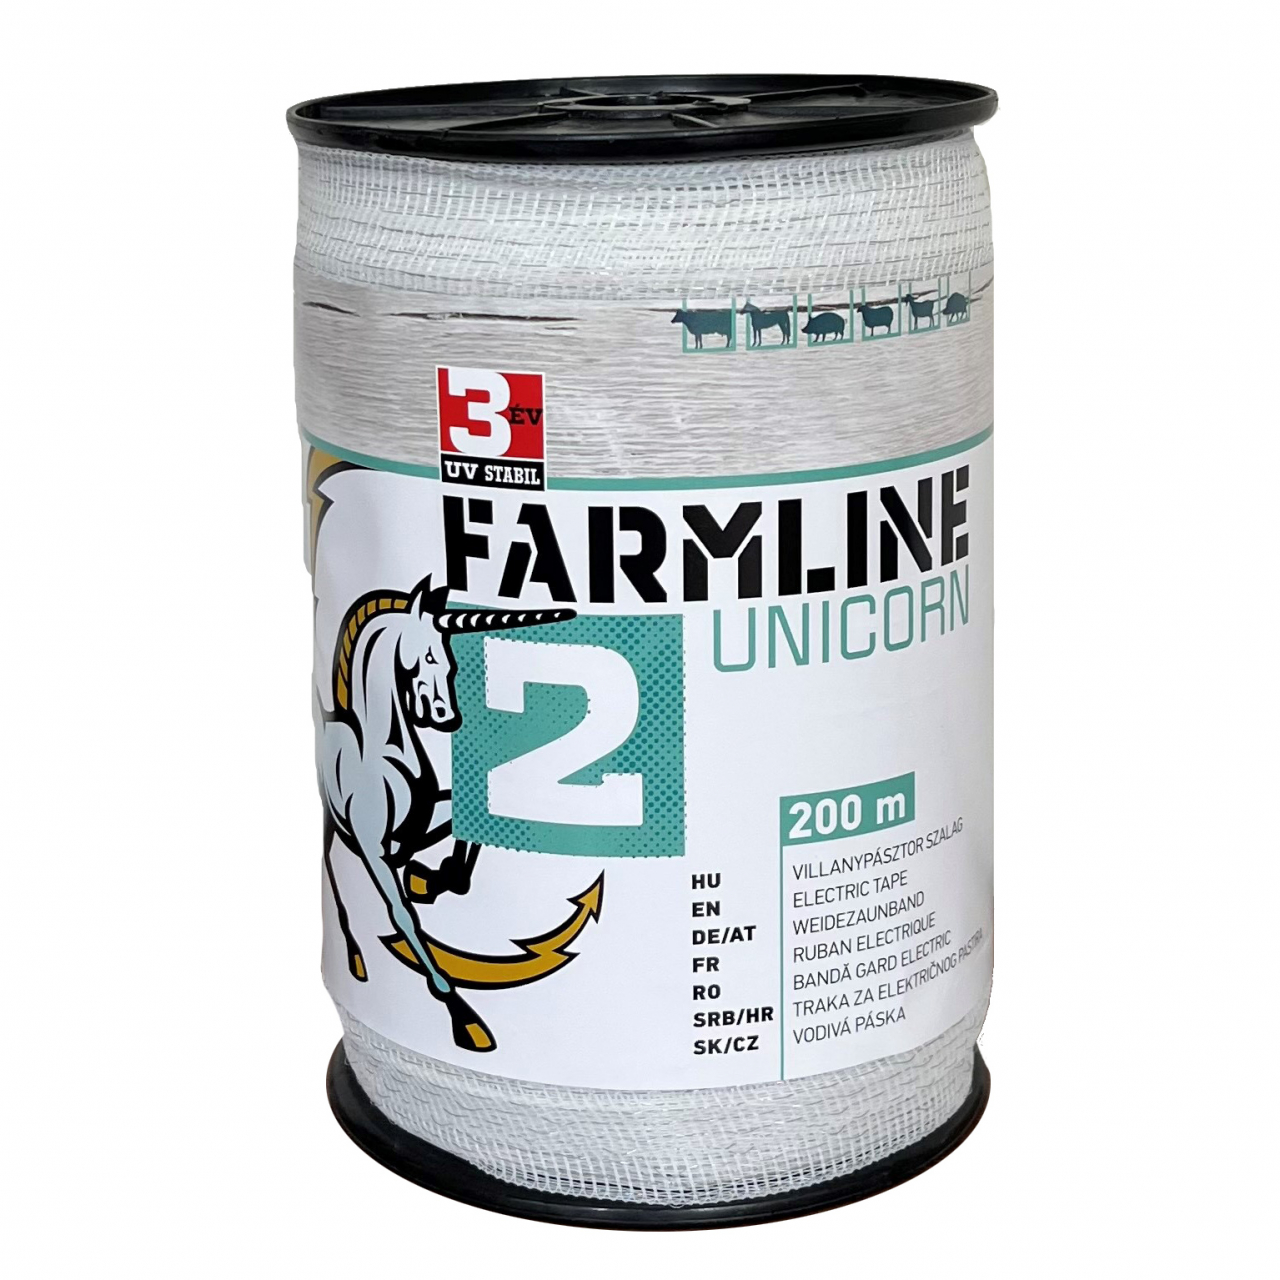 FarmLine Unicorn 2 villanypásztor szalag